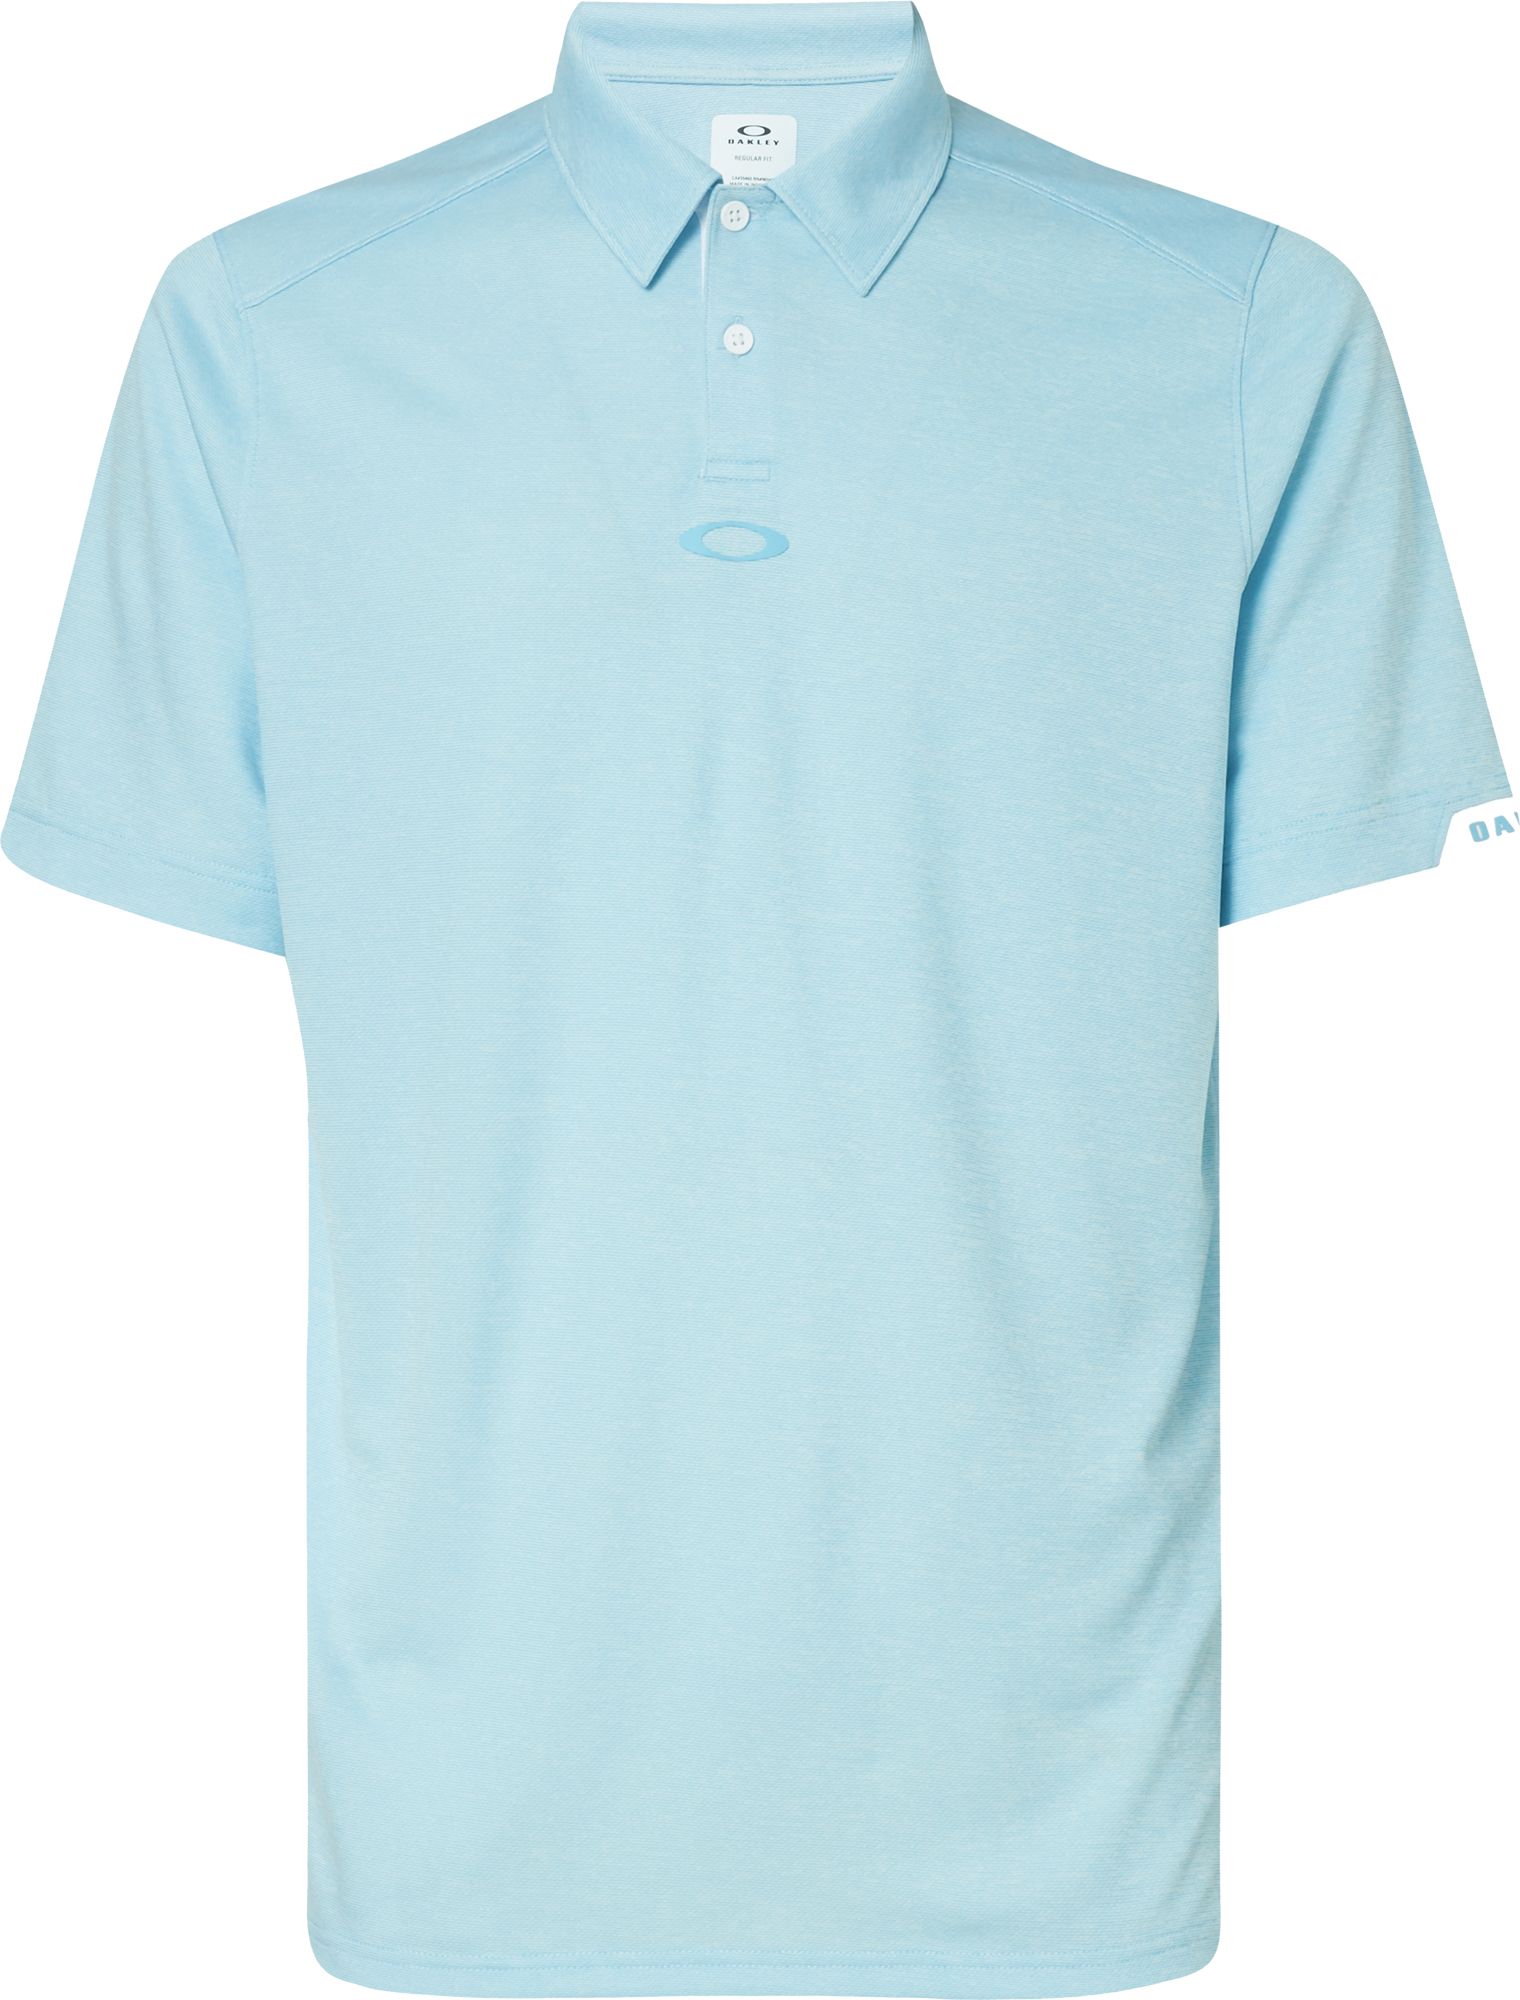 oakley golf shirts clearance